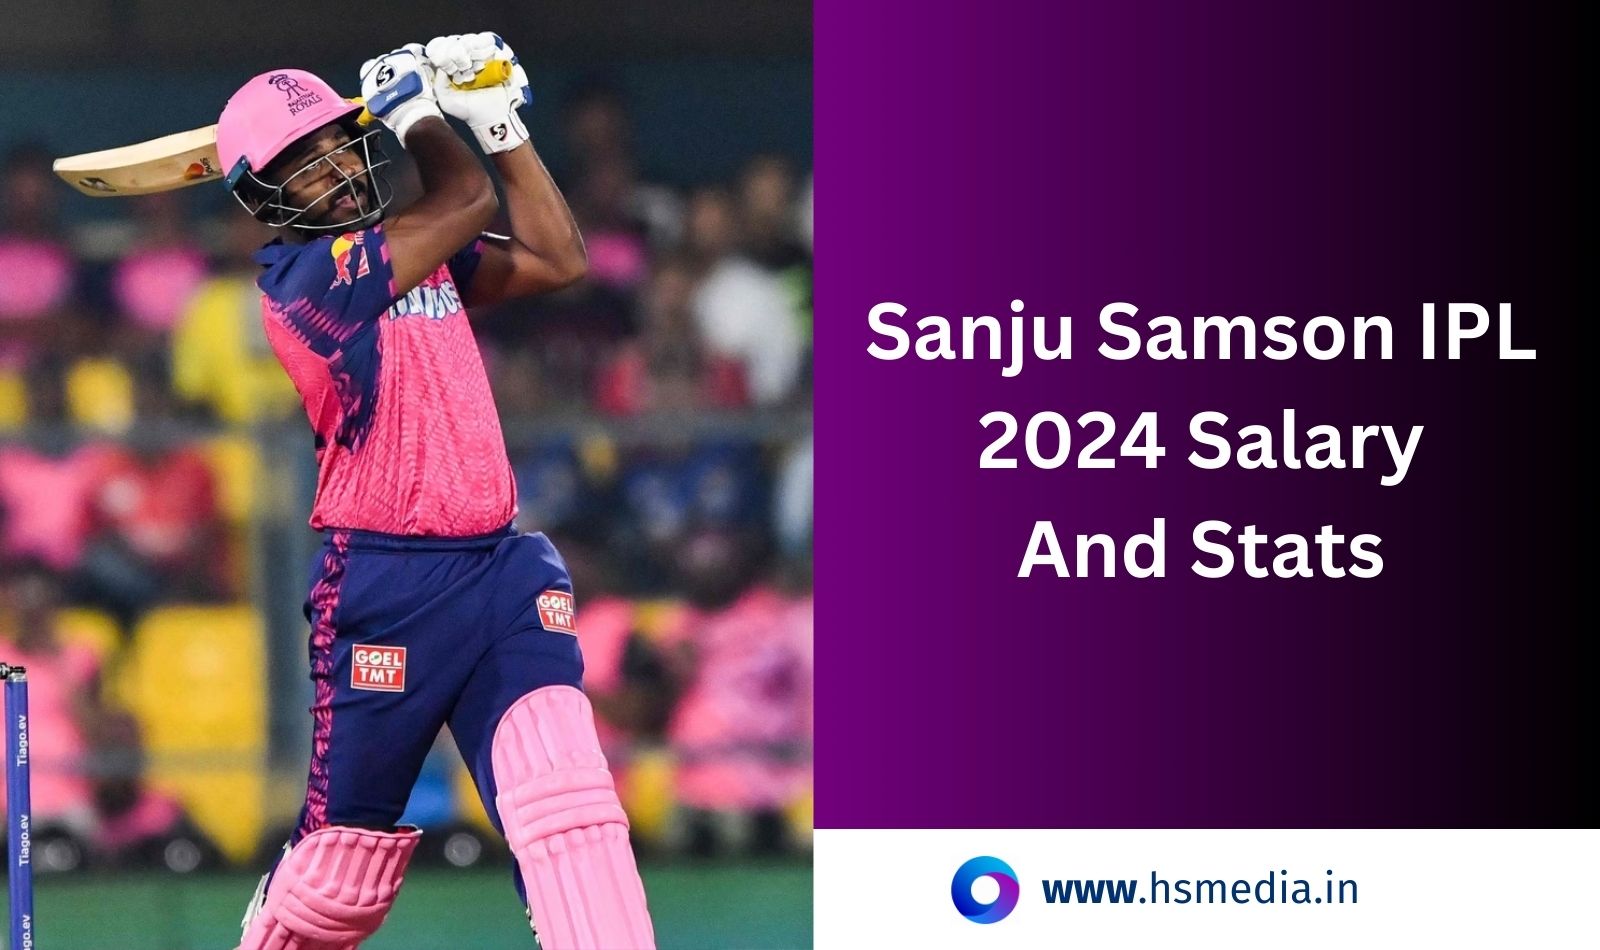 Sanju Samson IPL Salary 2024